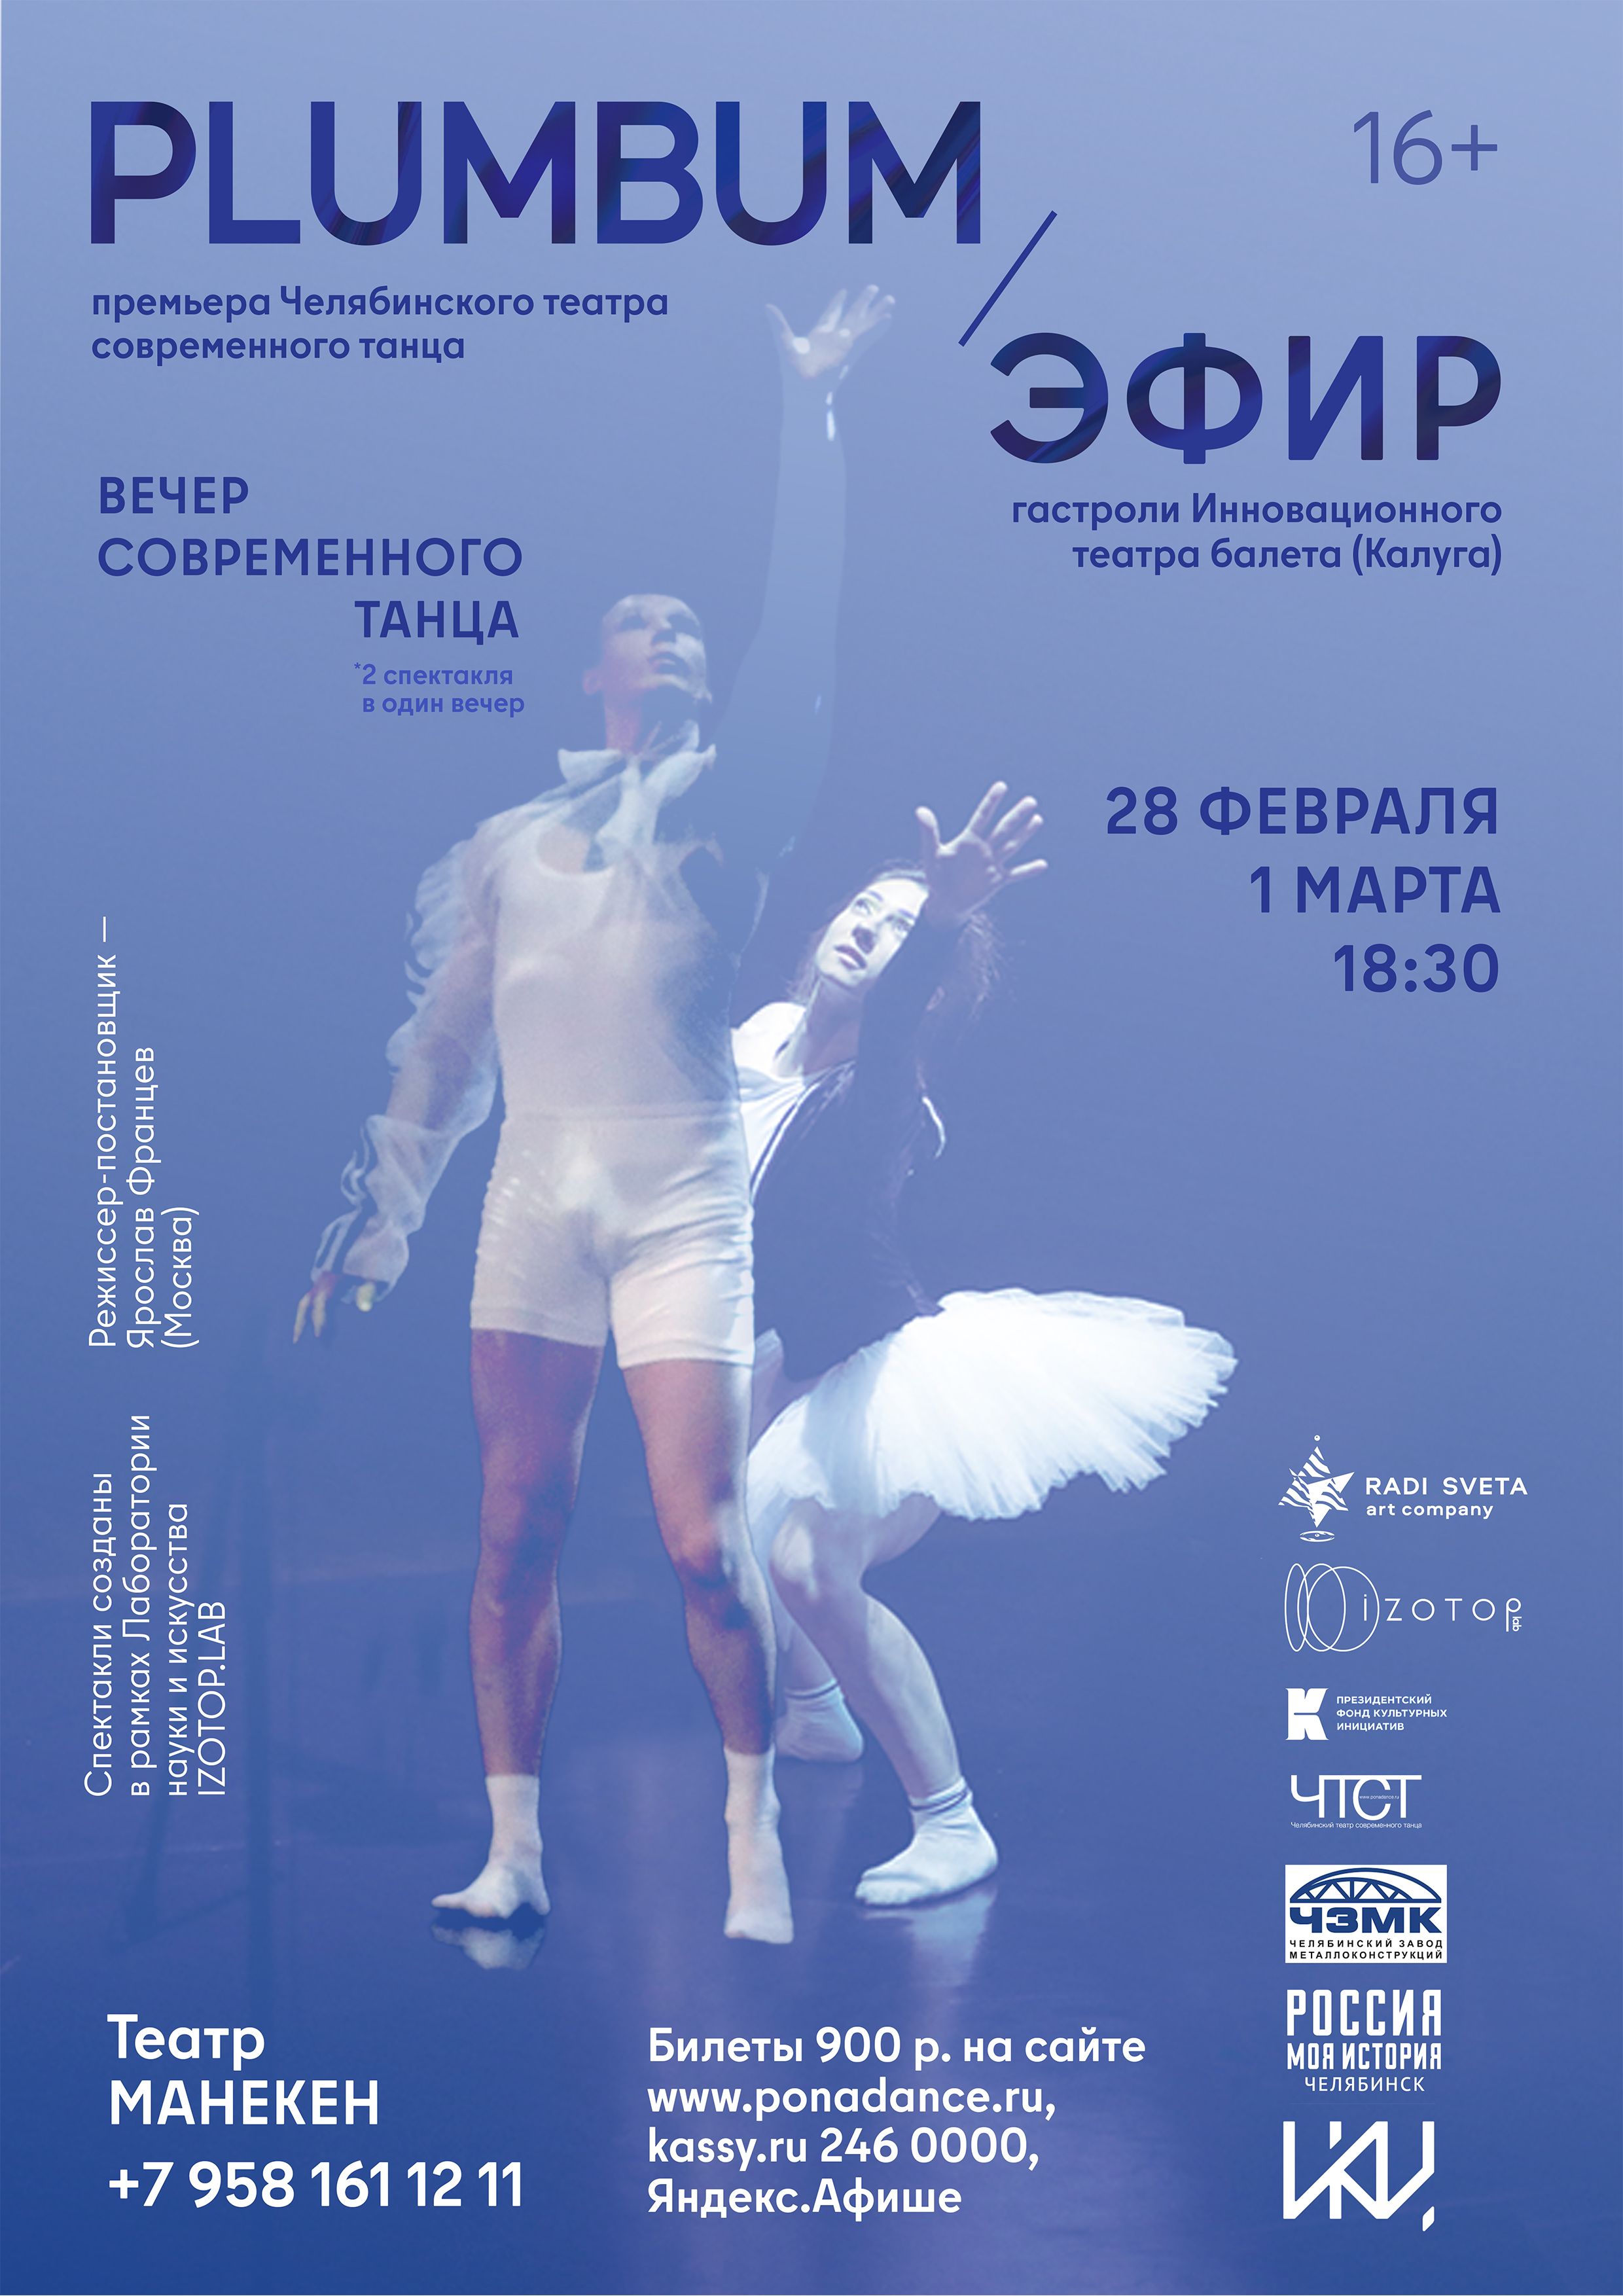 В Челябинске состоится вечер современного танца с двумя премьерами